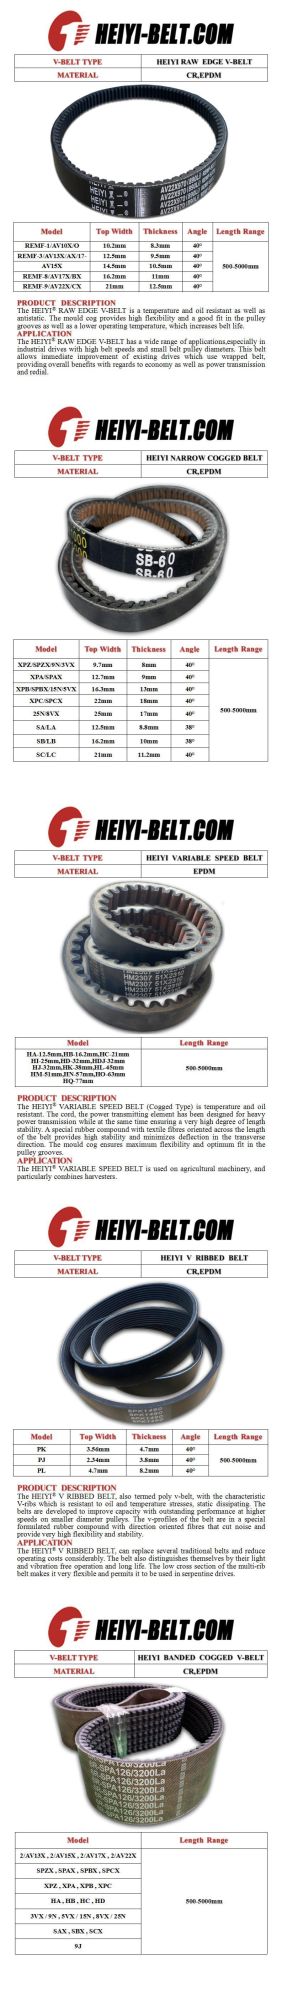 EPDM Rubber Material V-Ribbed Pk Belt Transmission Belt